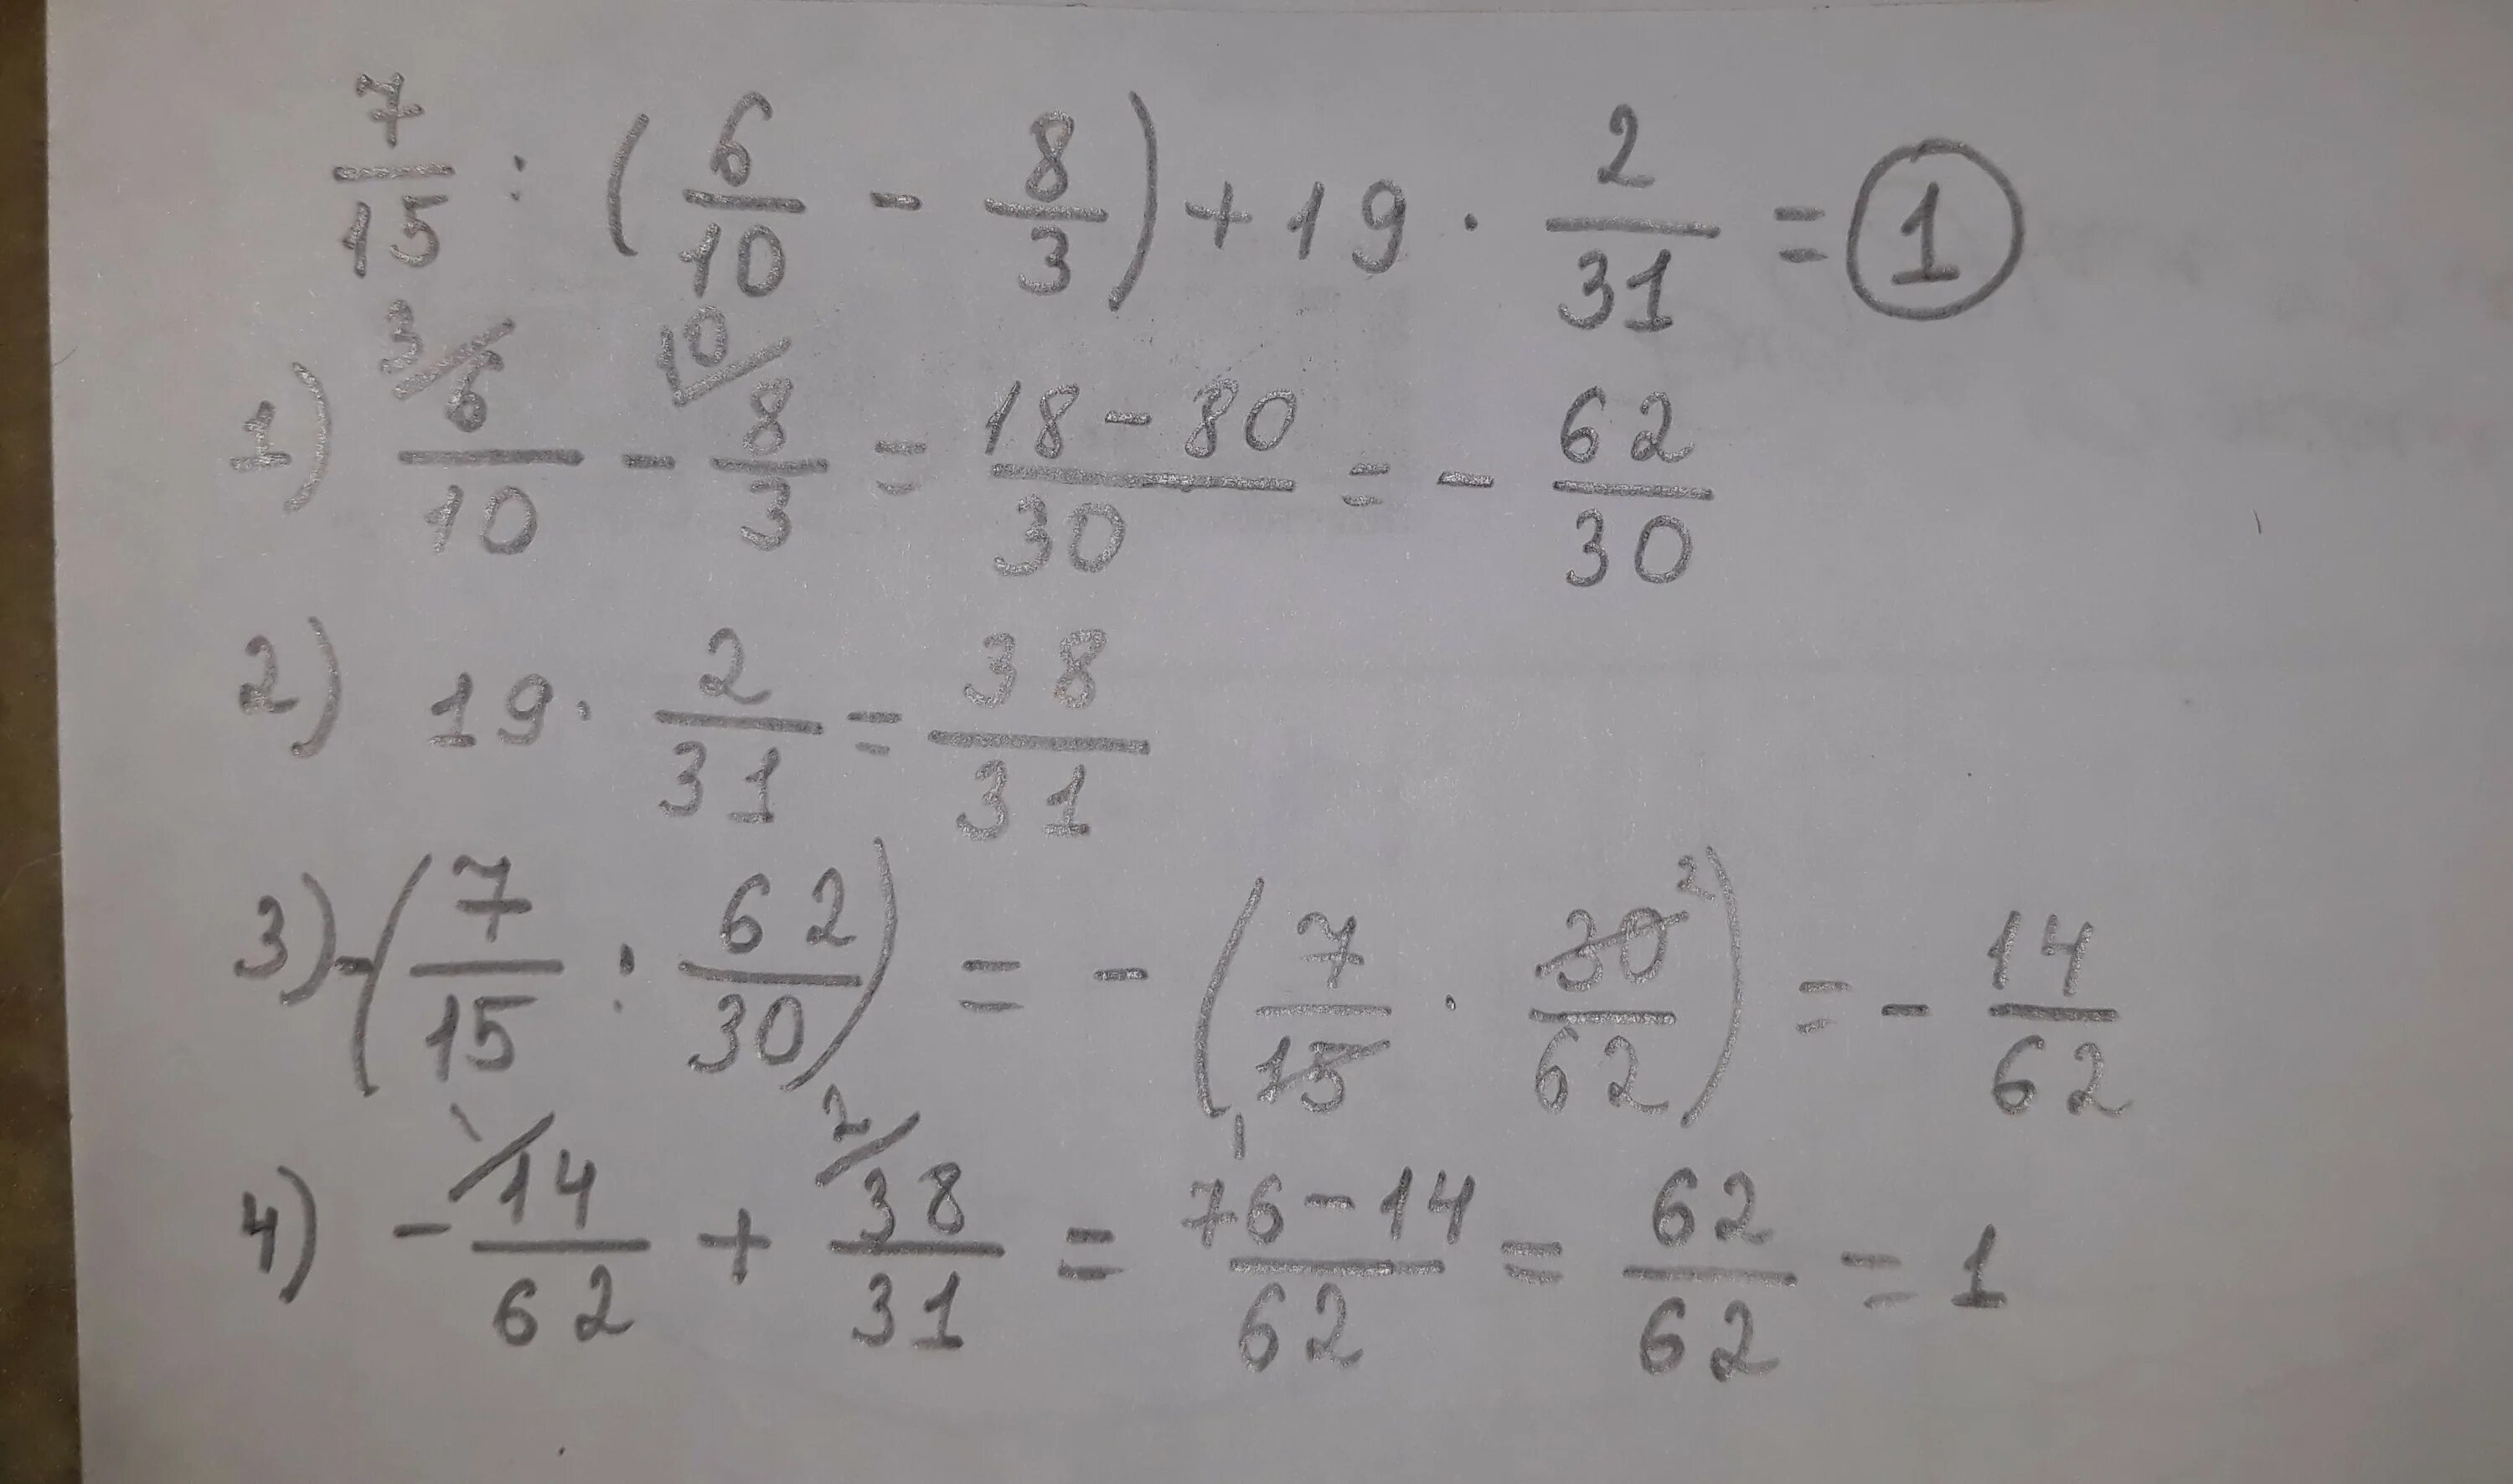 А 3 2 7 в 2 19. 7/15 6/10-8/3 +19 2/31. Вычислите 3/10-2/15. Вычислите √10 2-8. Вычислите 7,3*2-10, 8:(6, 8-5, 6).